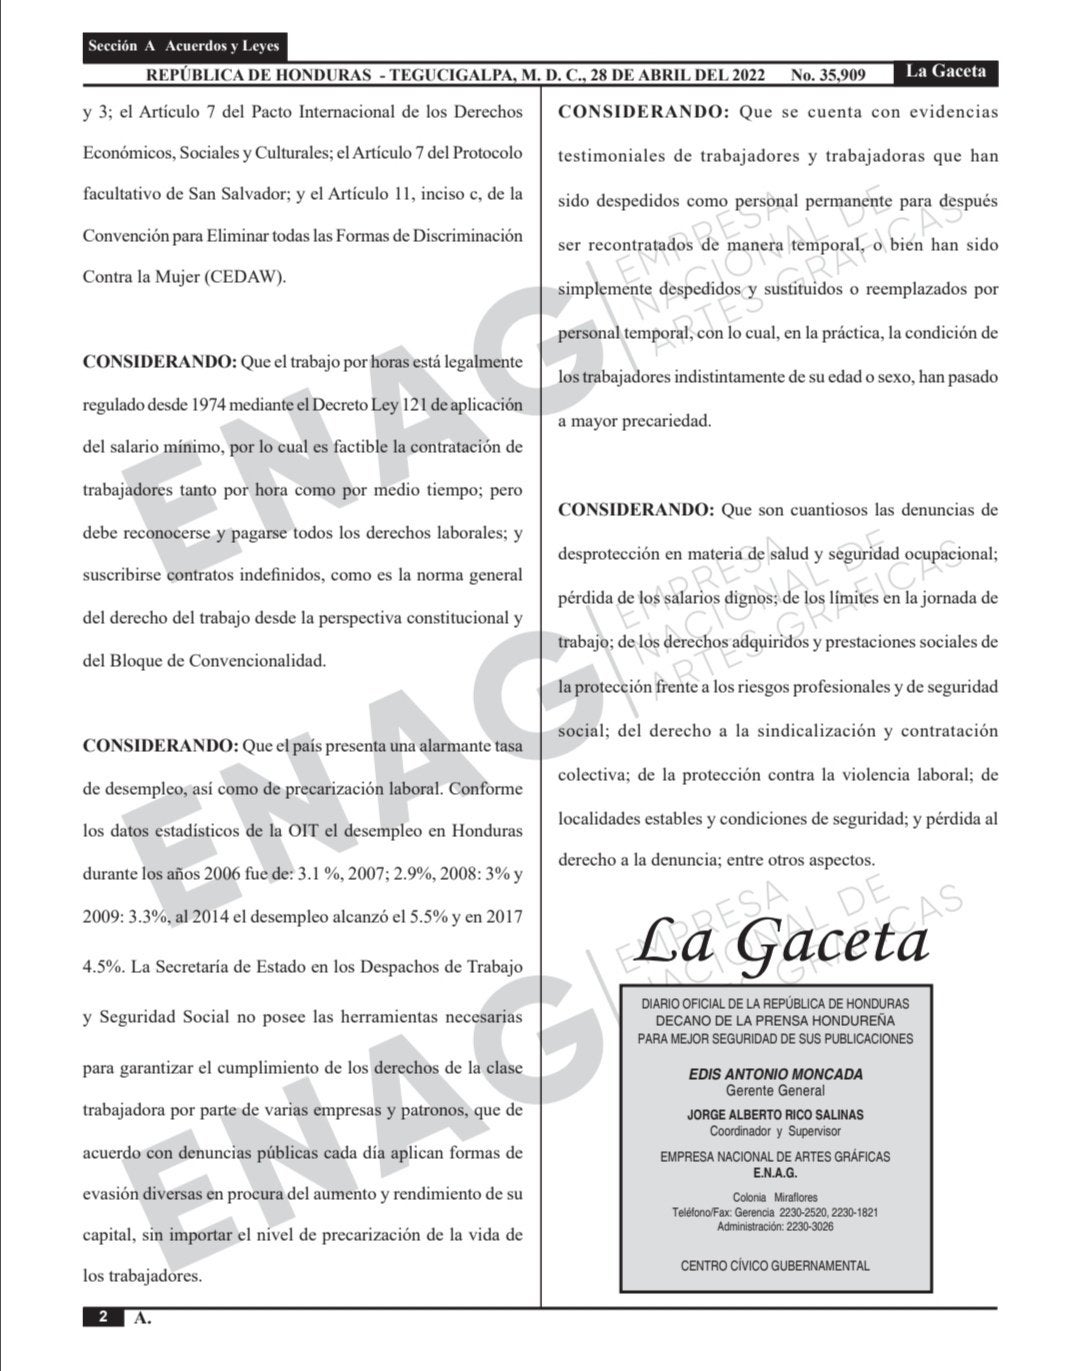 La derogación se publicó en La Gaceta con fecha 28 de abril del 2022.